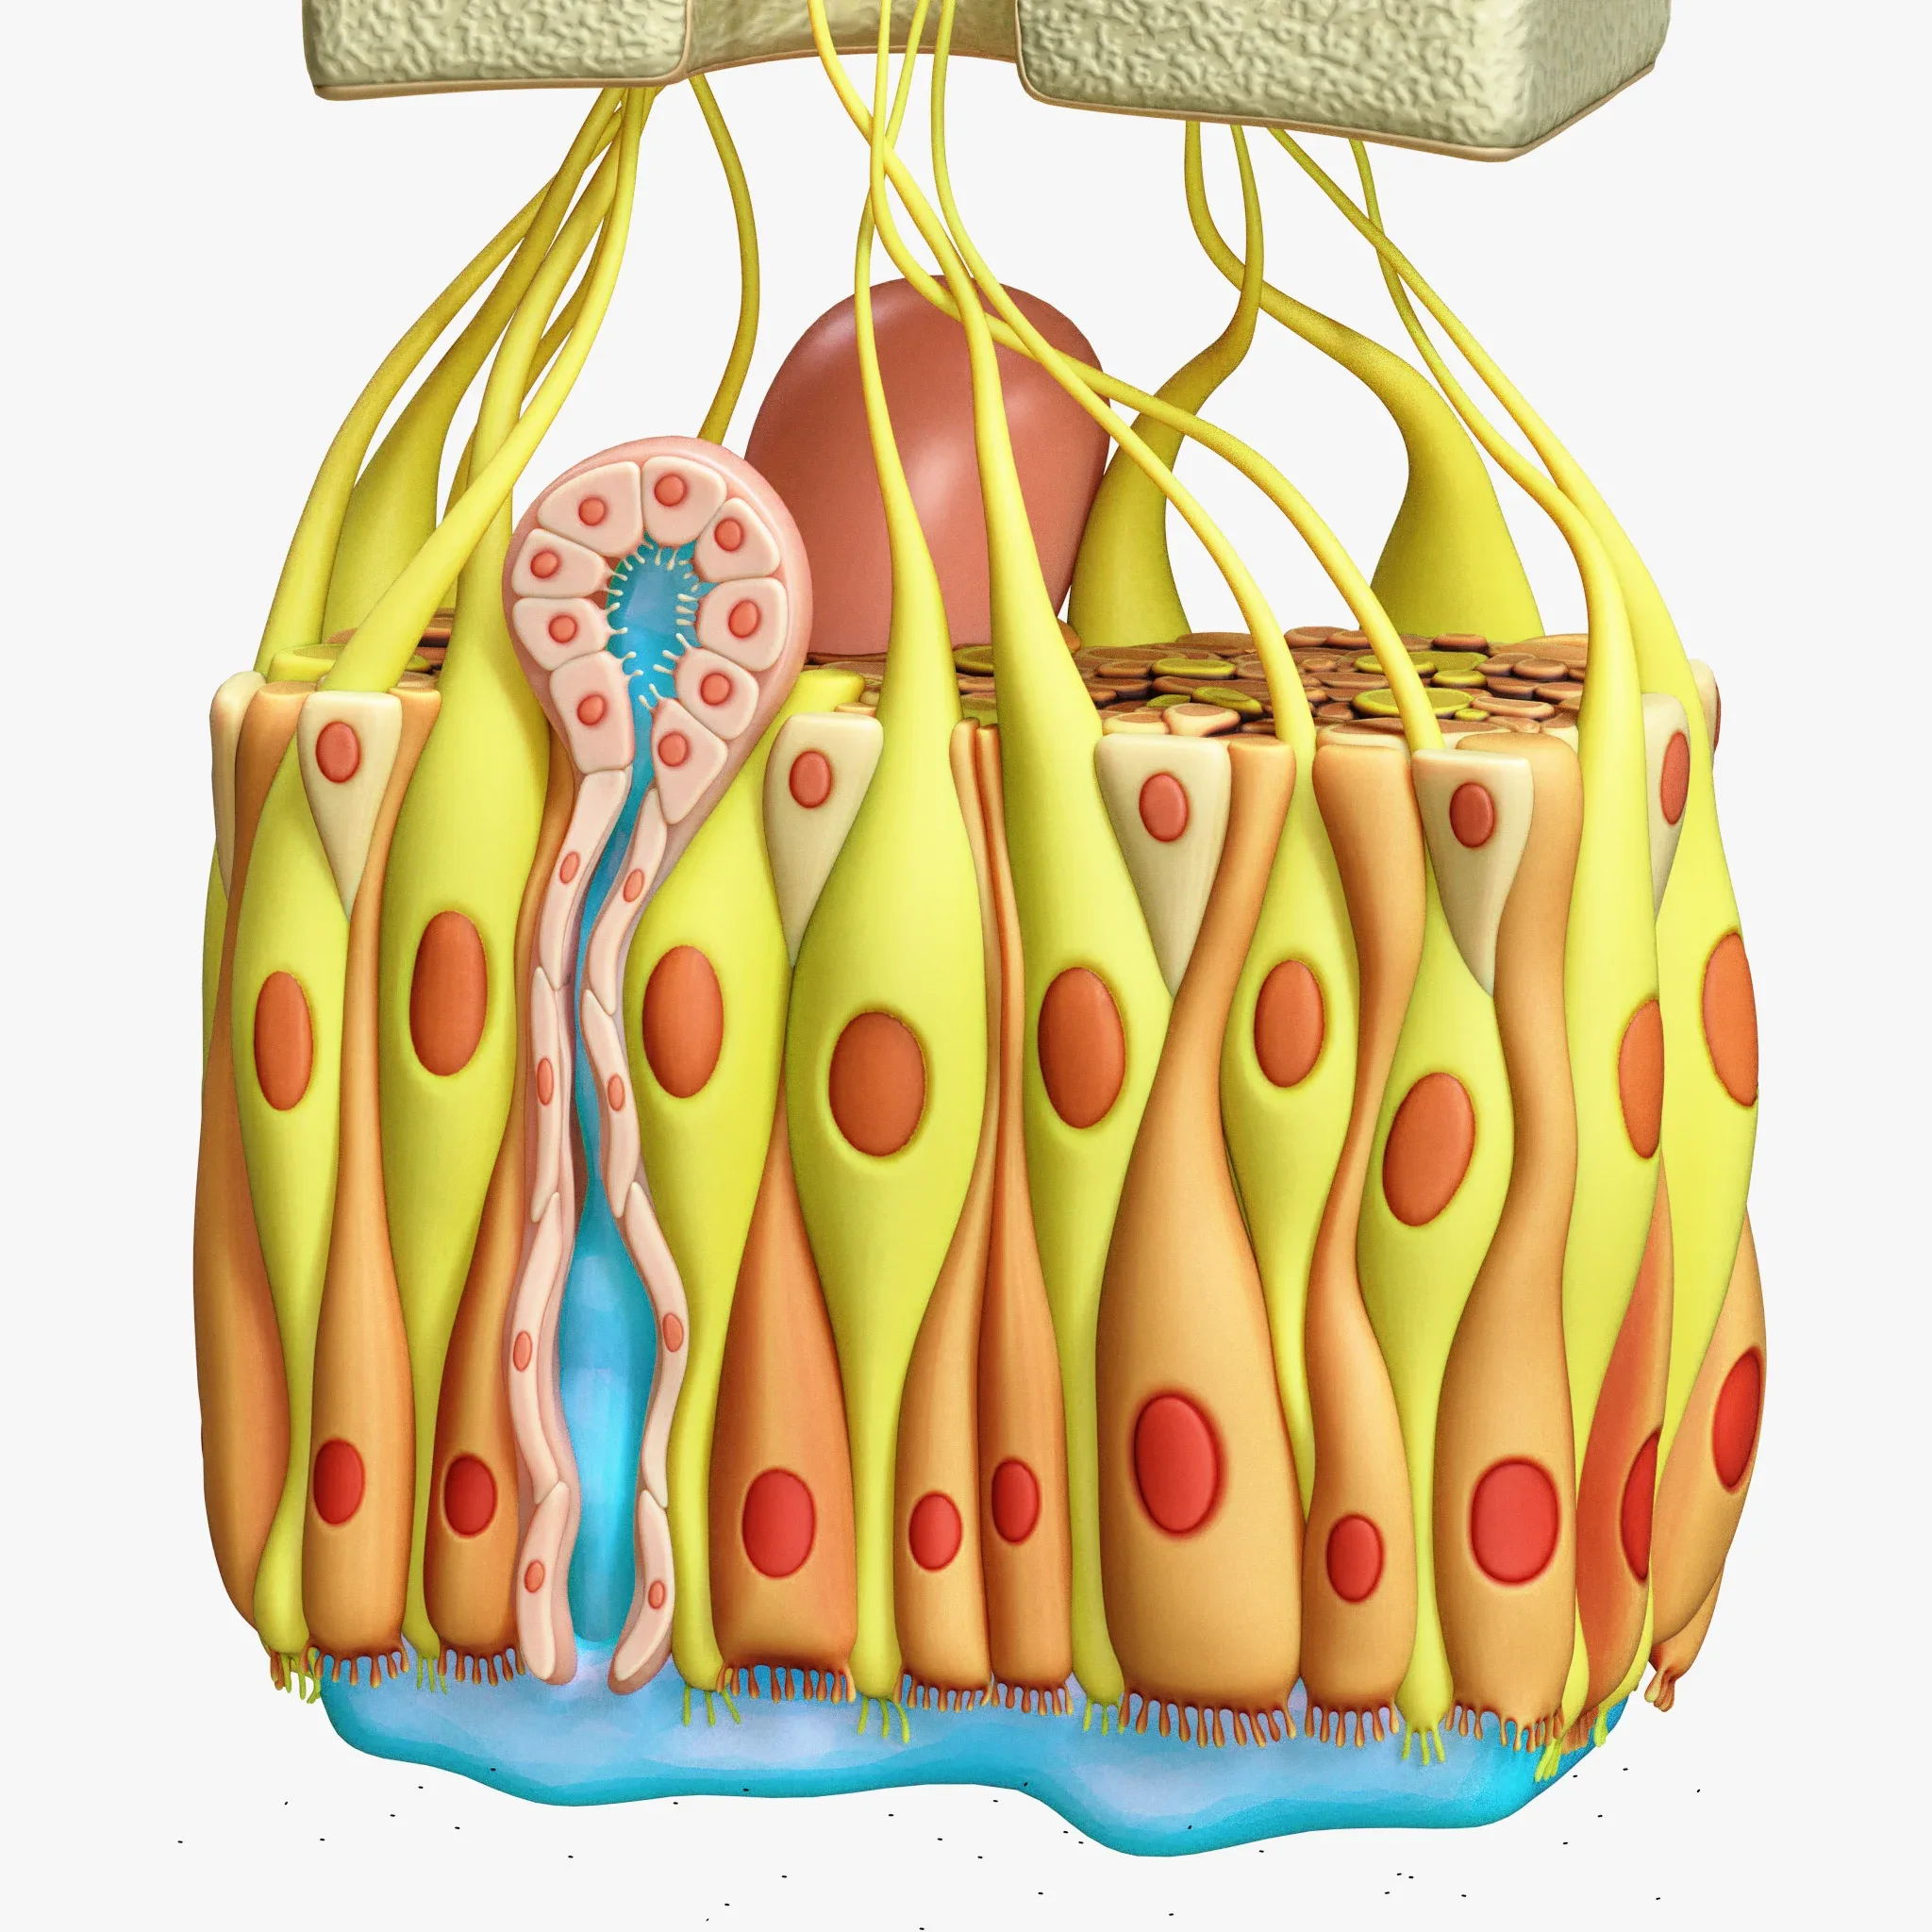 Olfactory Epithelium Microscopic Anatomy